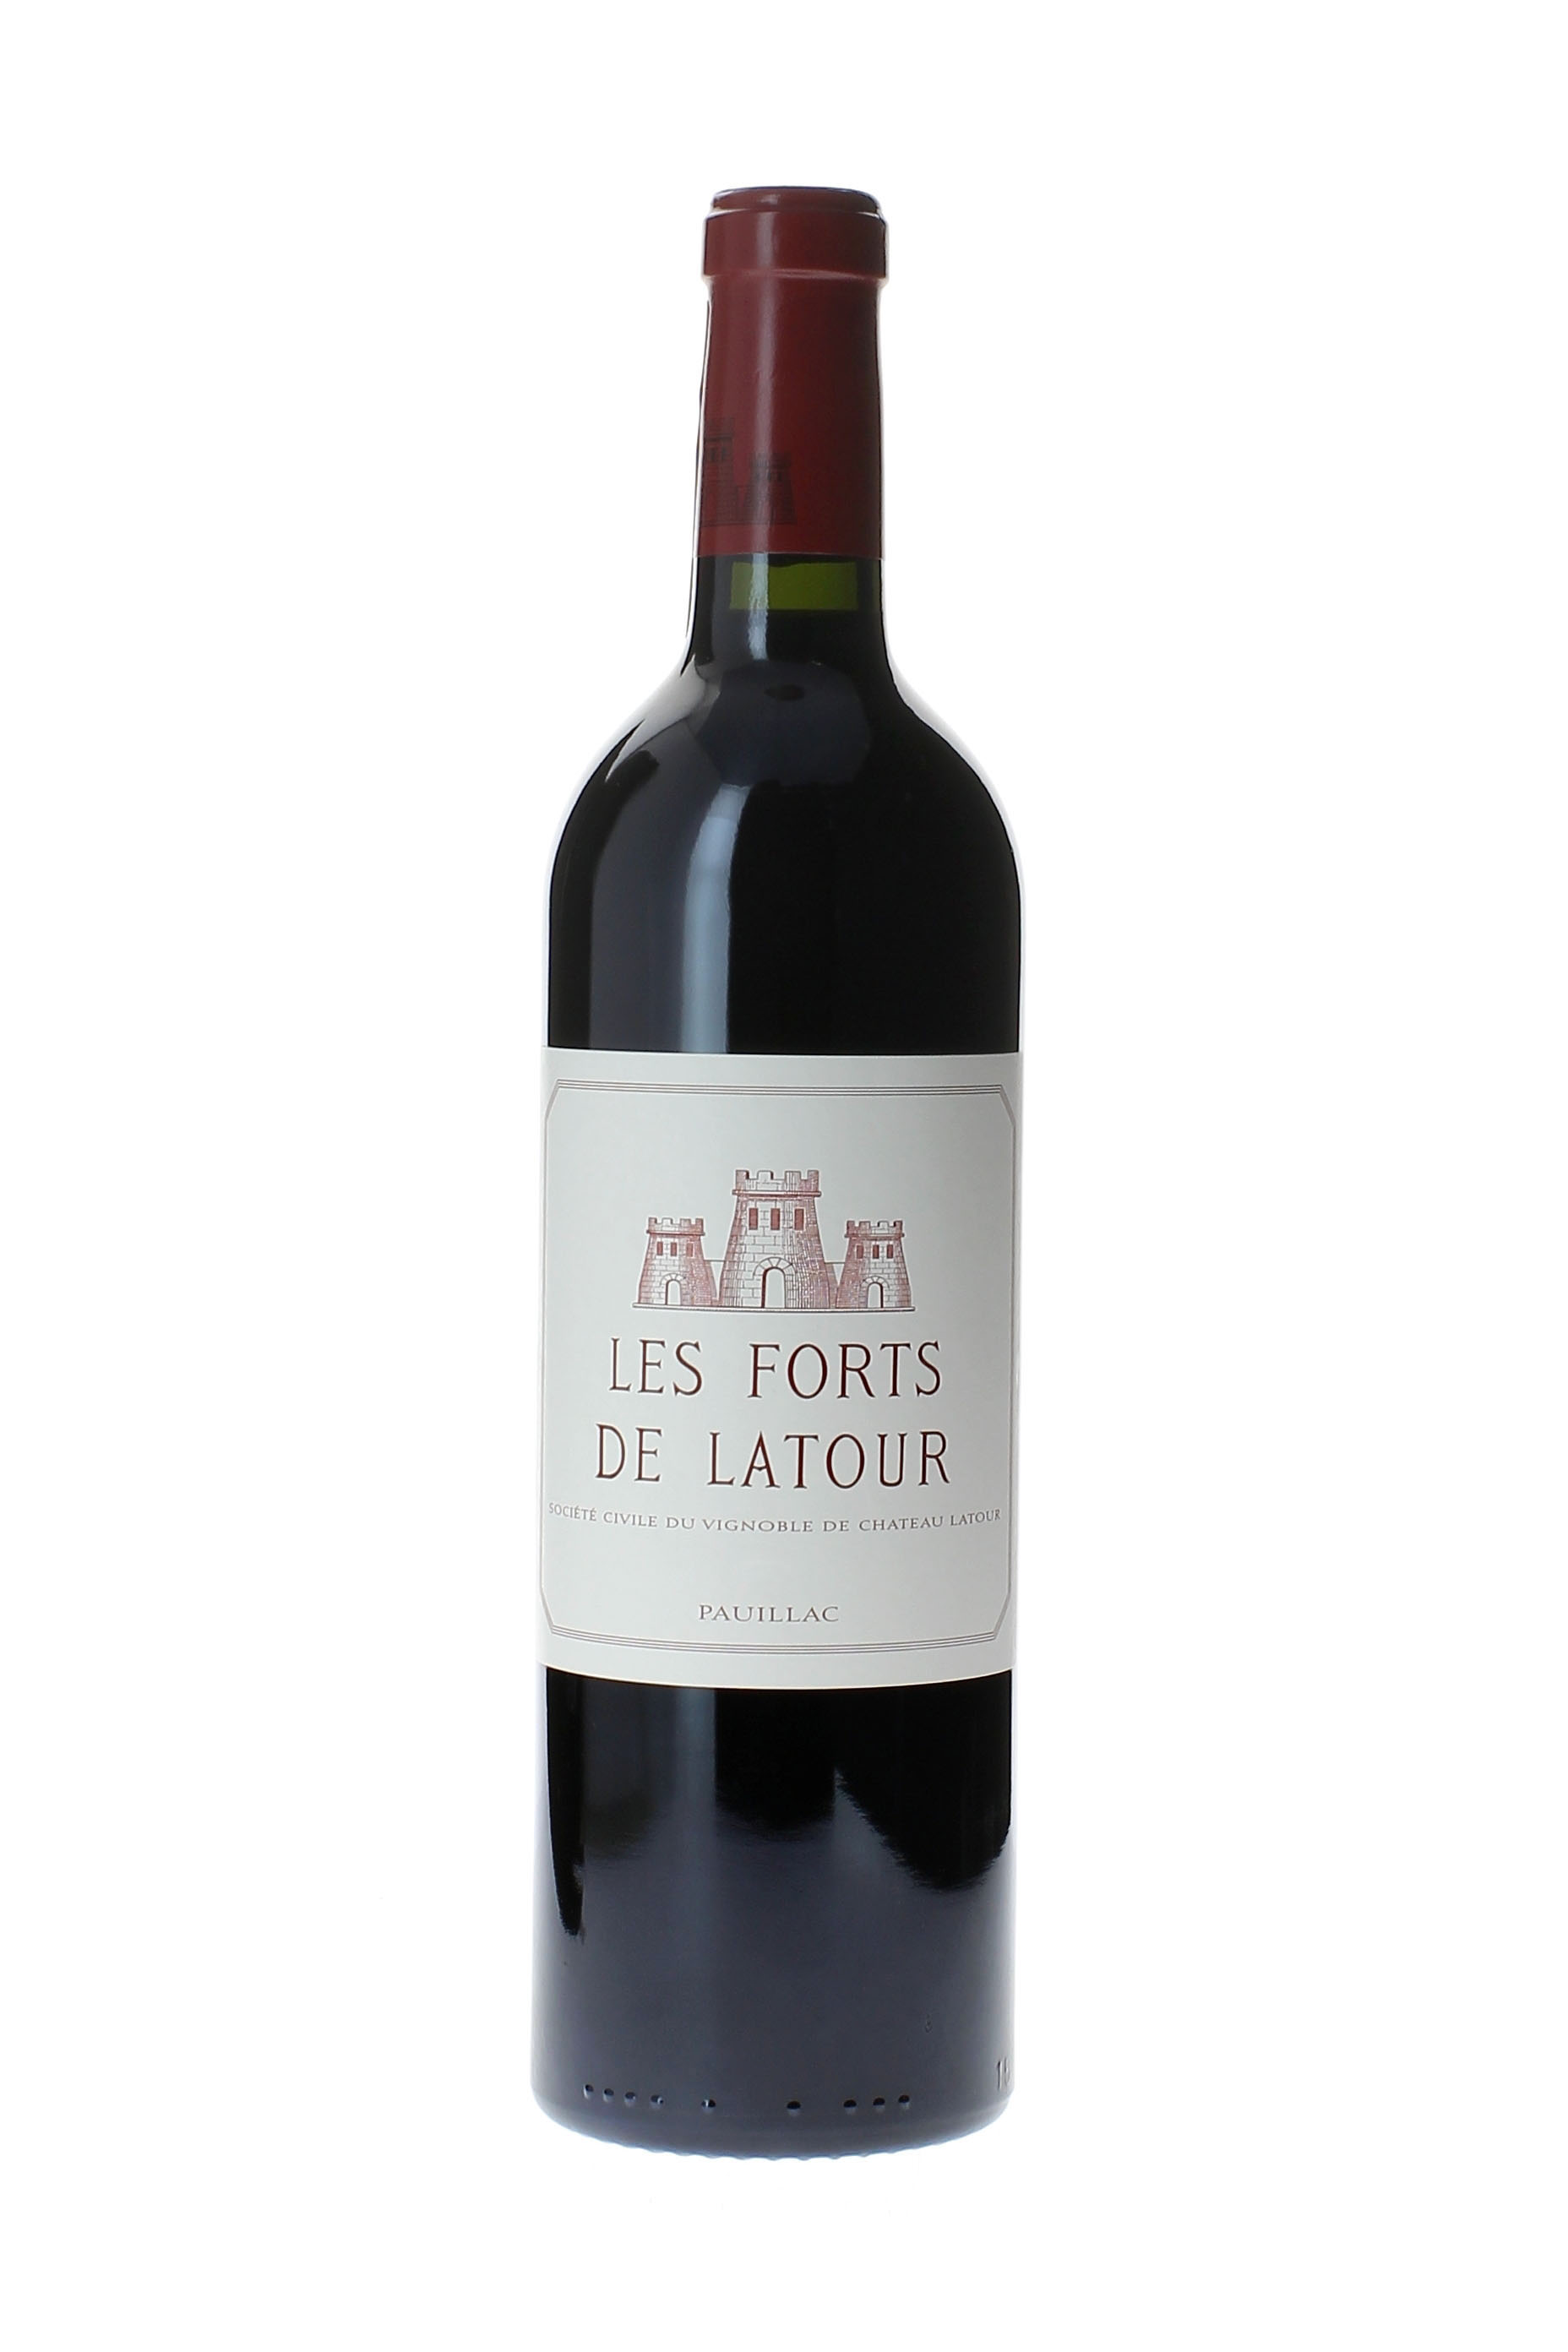 Forts de latour 1994 2me vin de LATOUR Pauillac, Bordeaux rouge